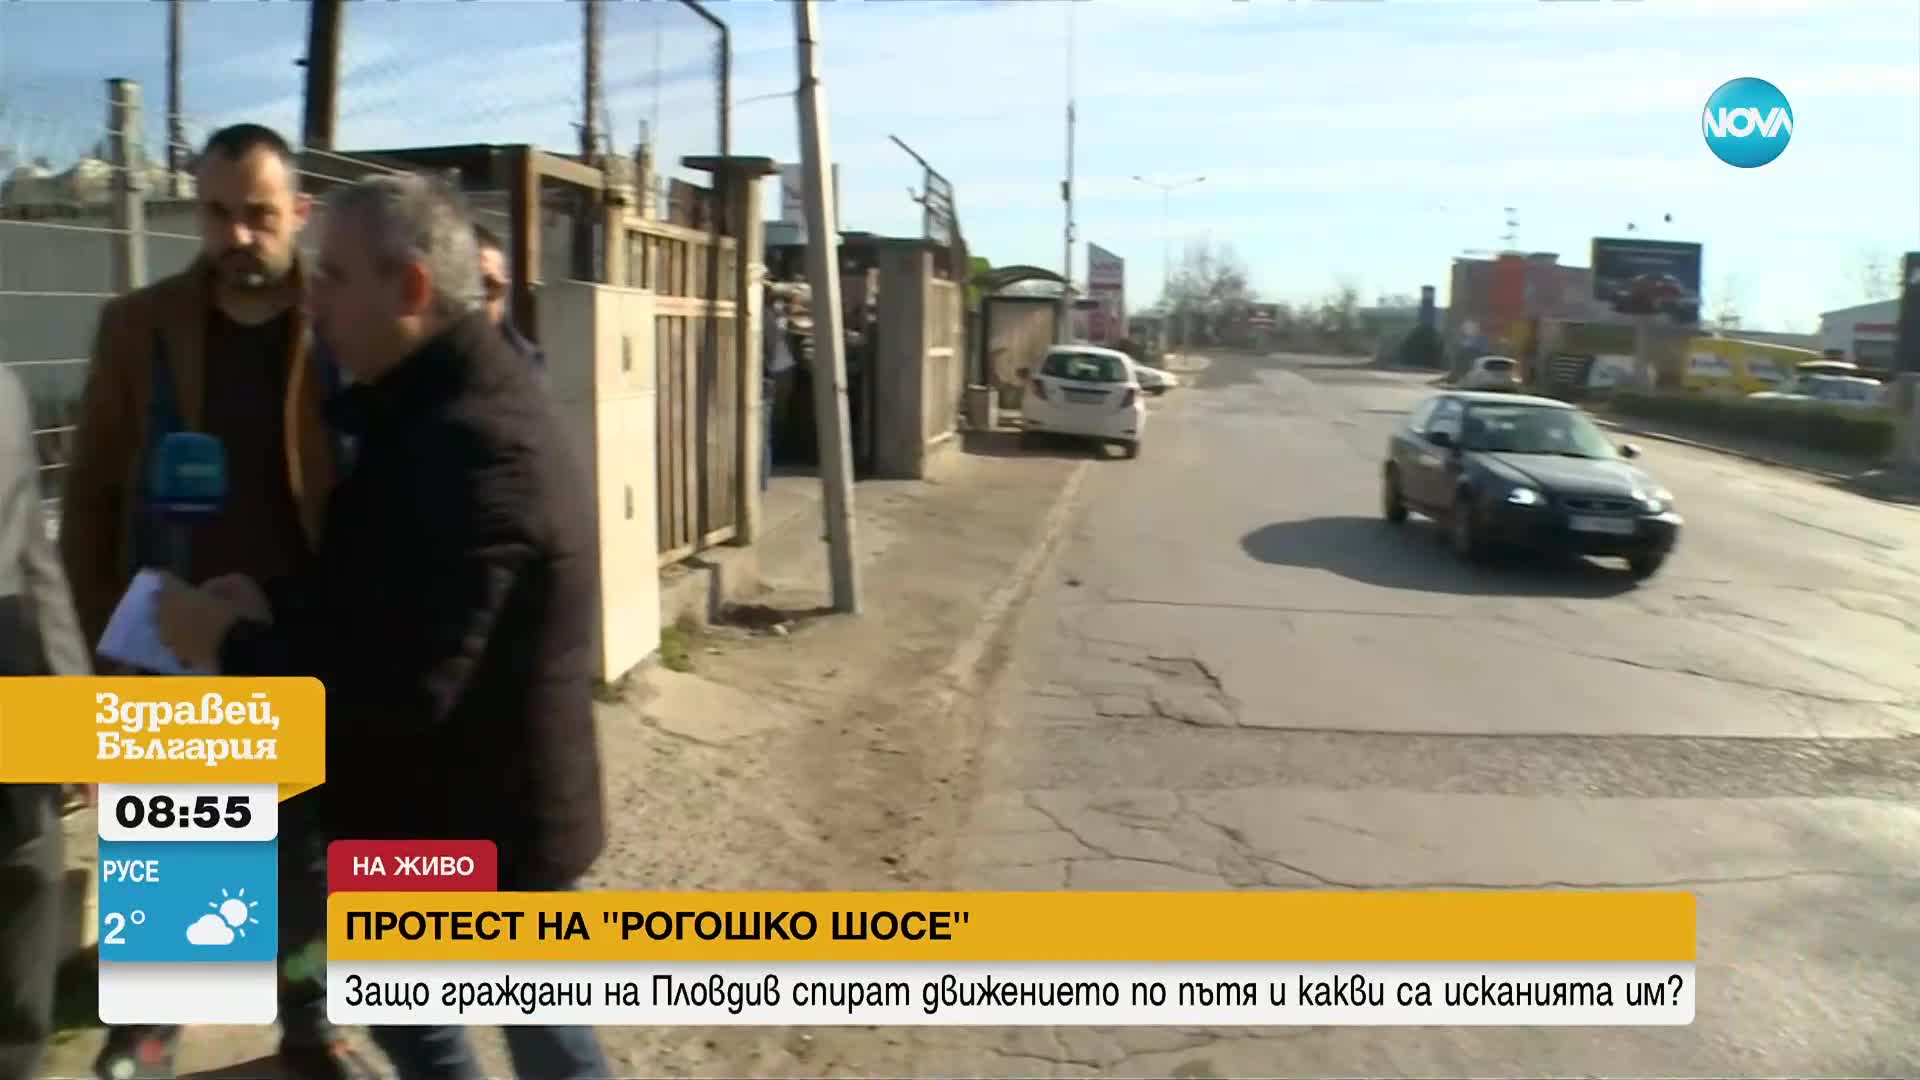 Граждани протестират срещу разбит път в Пловдив, ще садят картофи в дупките